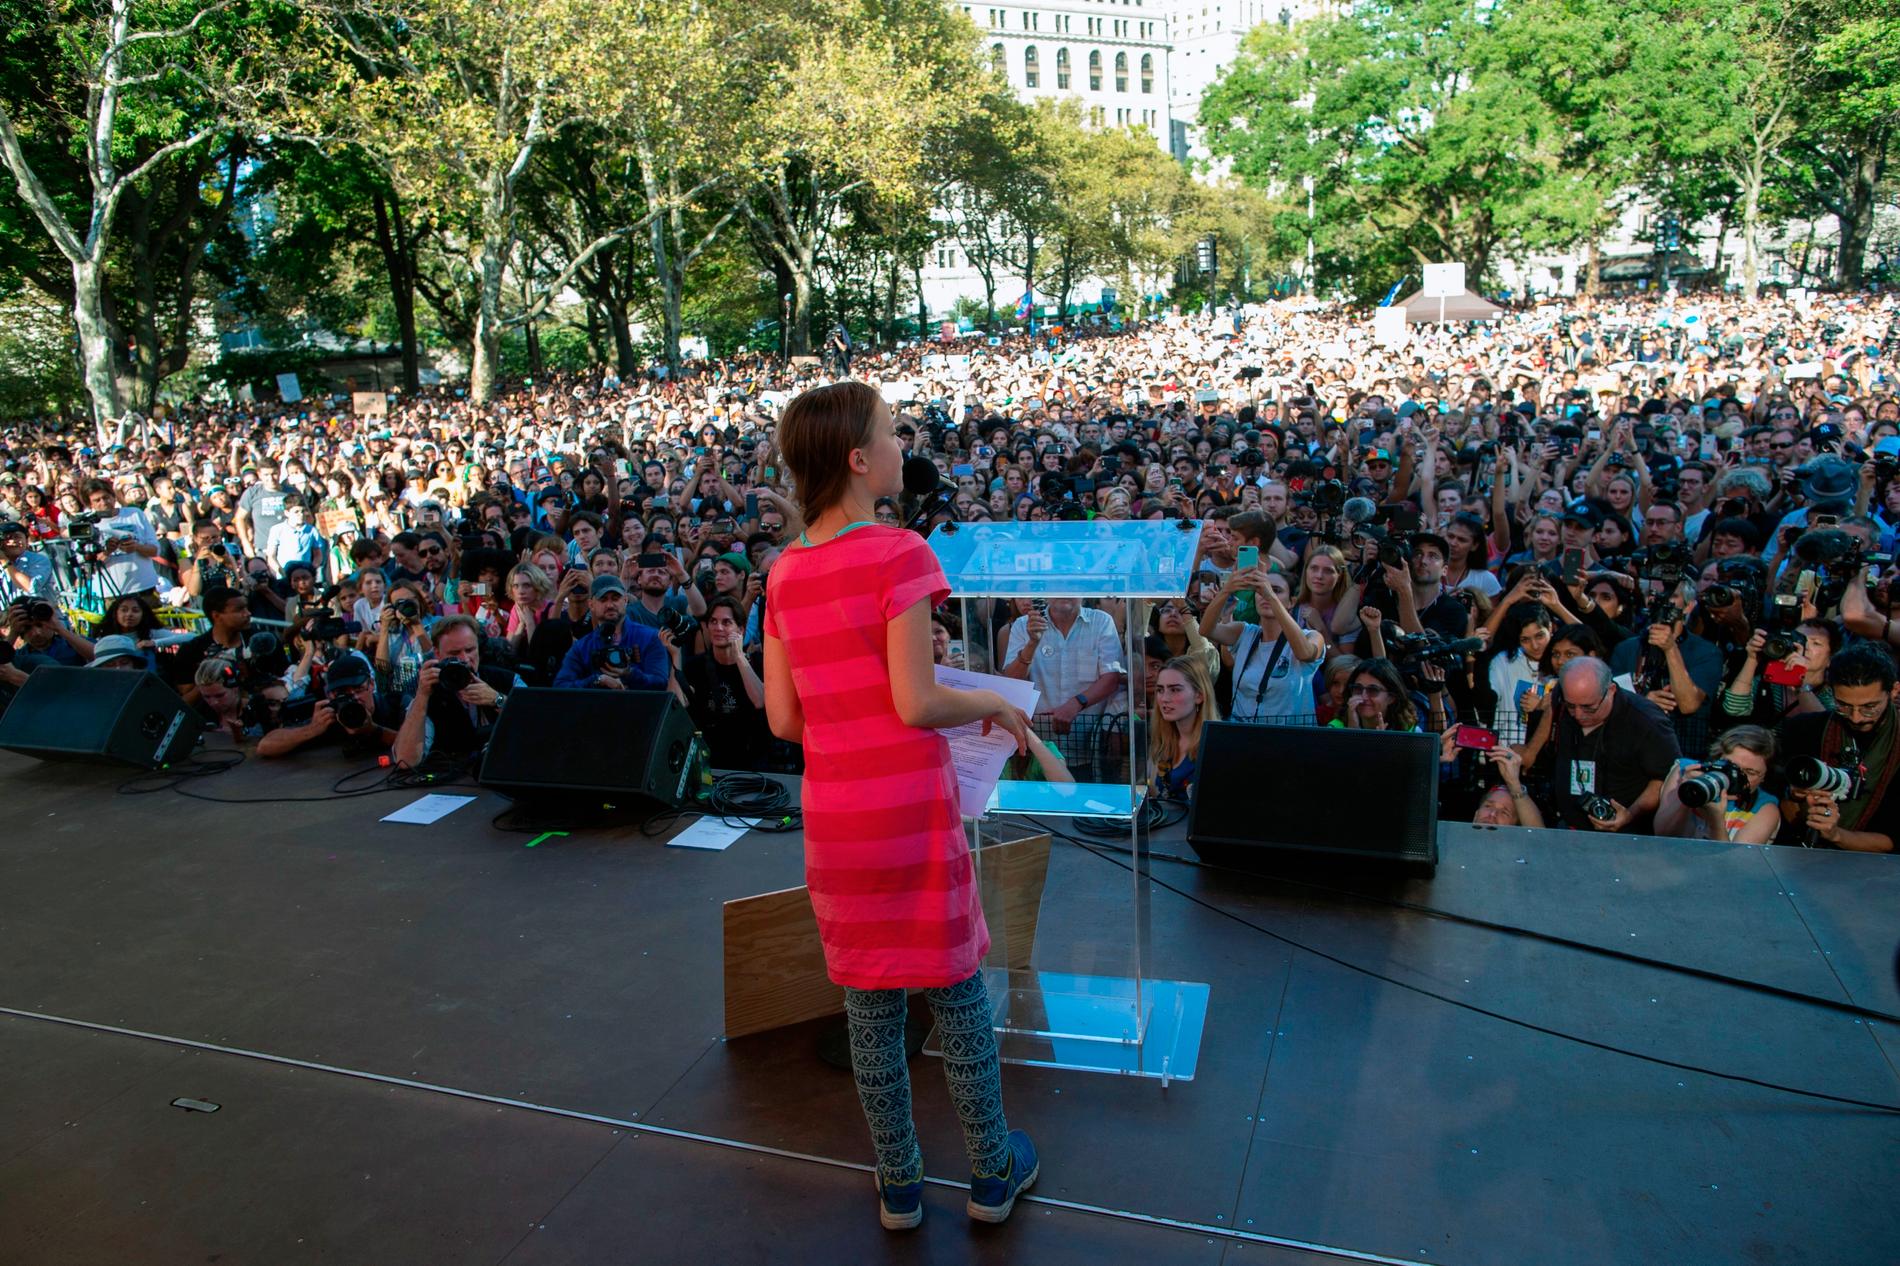 En enorm folkmassa samlades för att höra miljöaktivistens tal i Battery Park, New York.